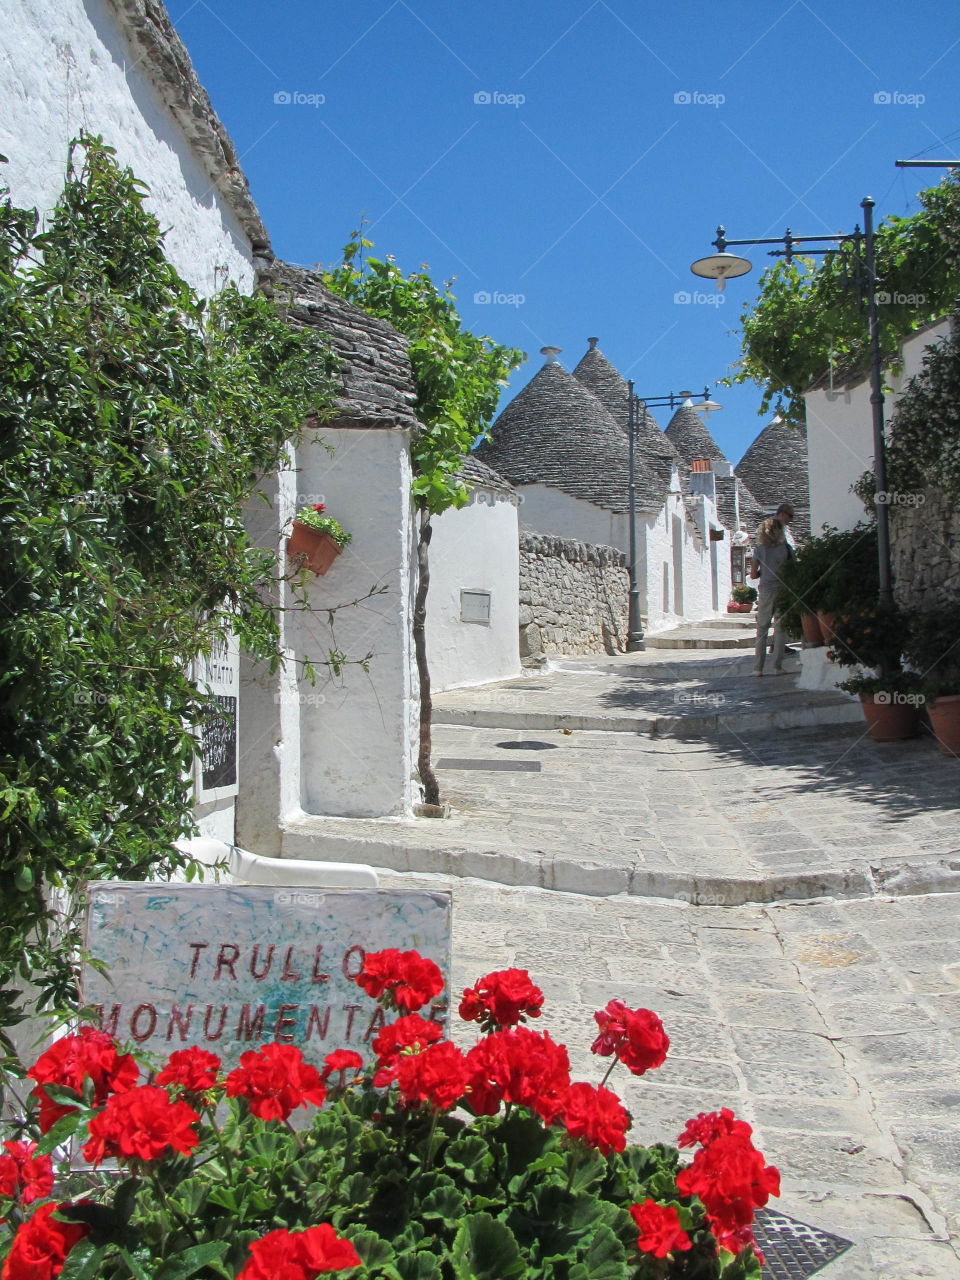 Italian trulli village